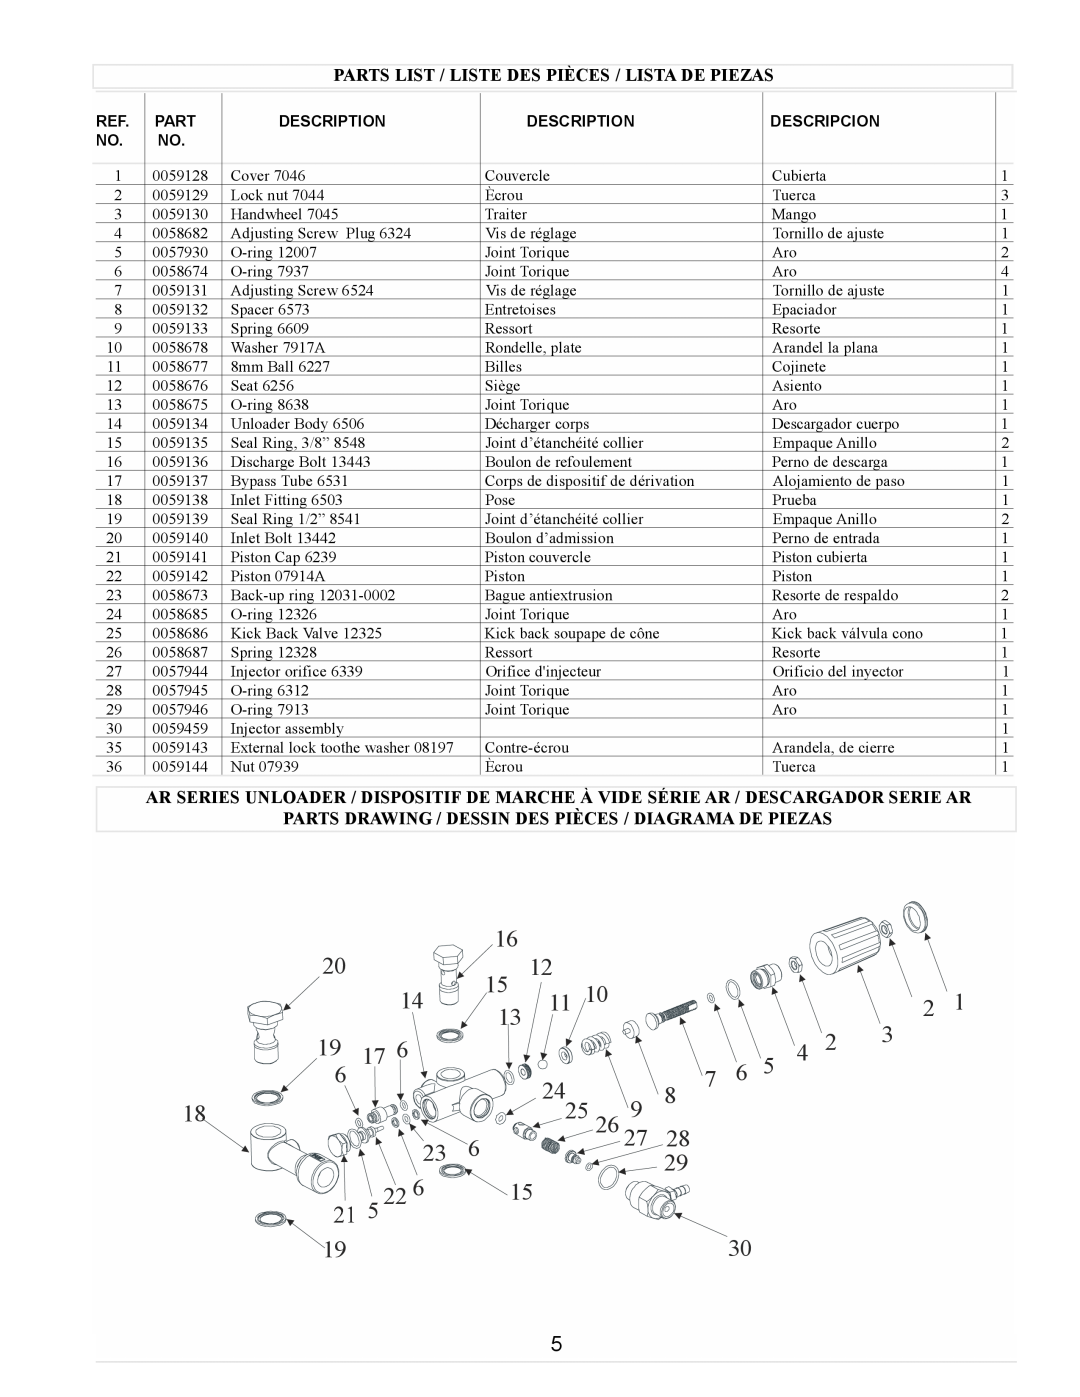 Coleman PW0923500, Powermate manual 2425, Parts List / Liste Des Pièces / Lista De Piezas 